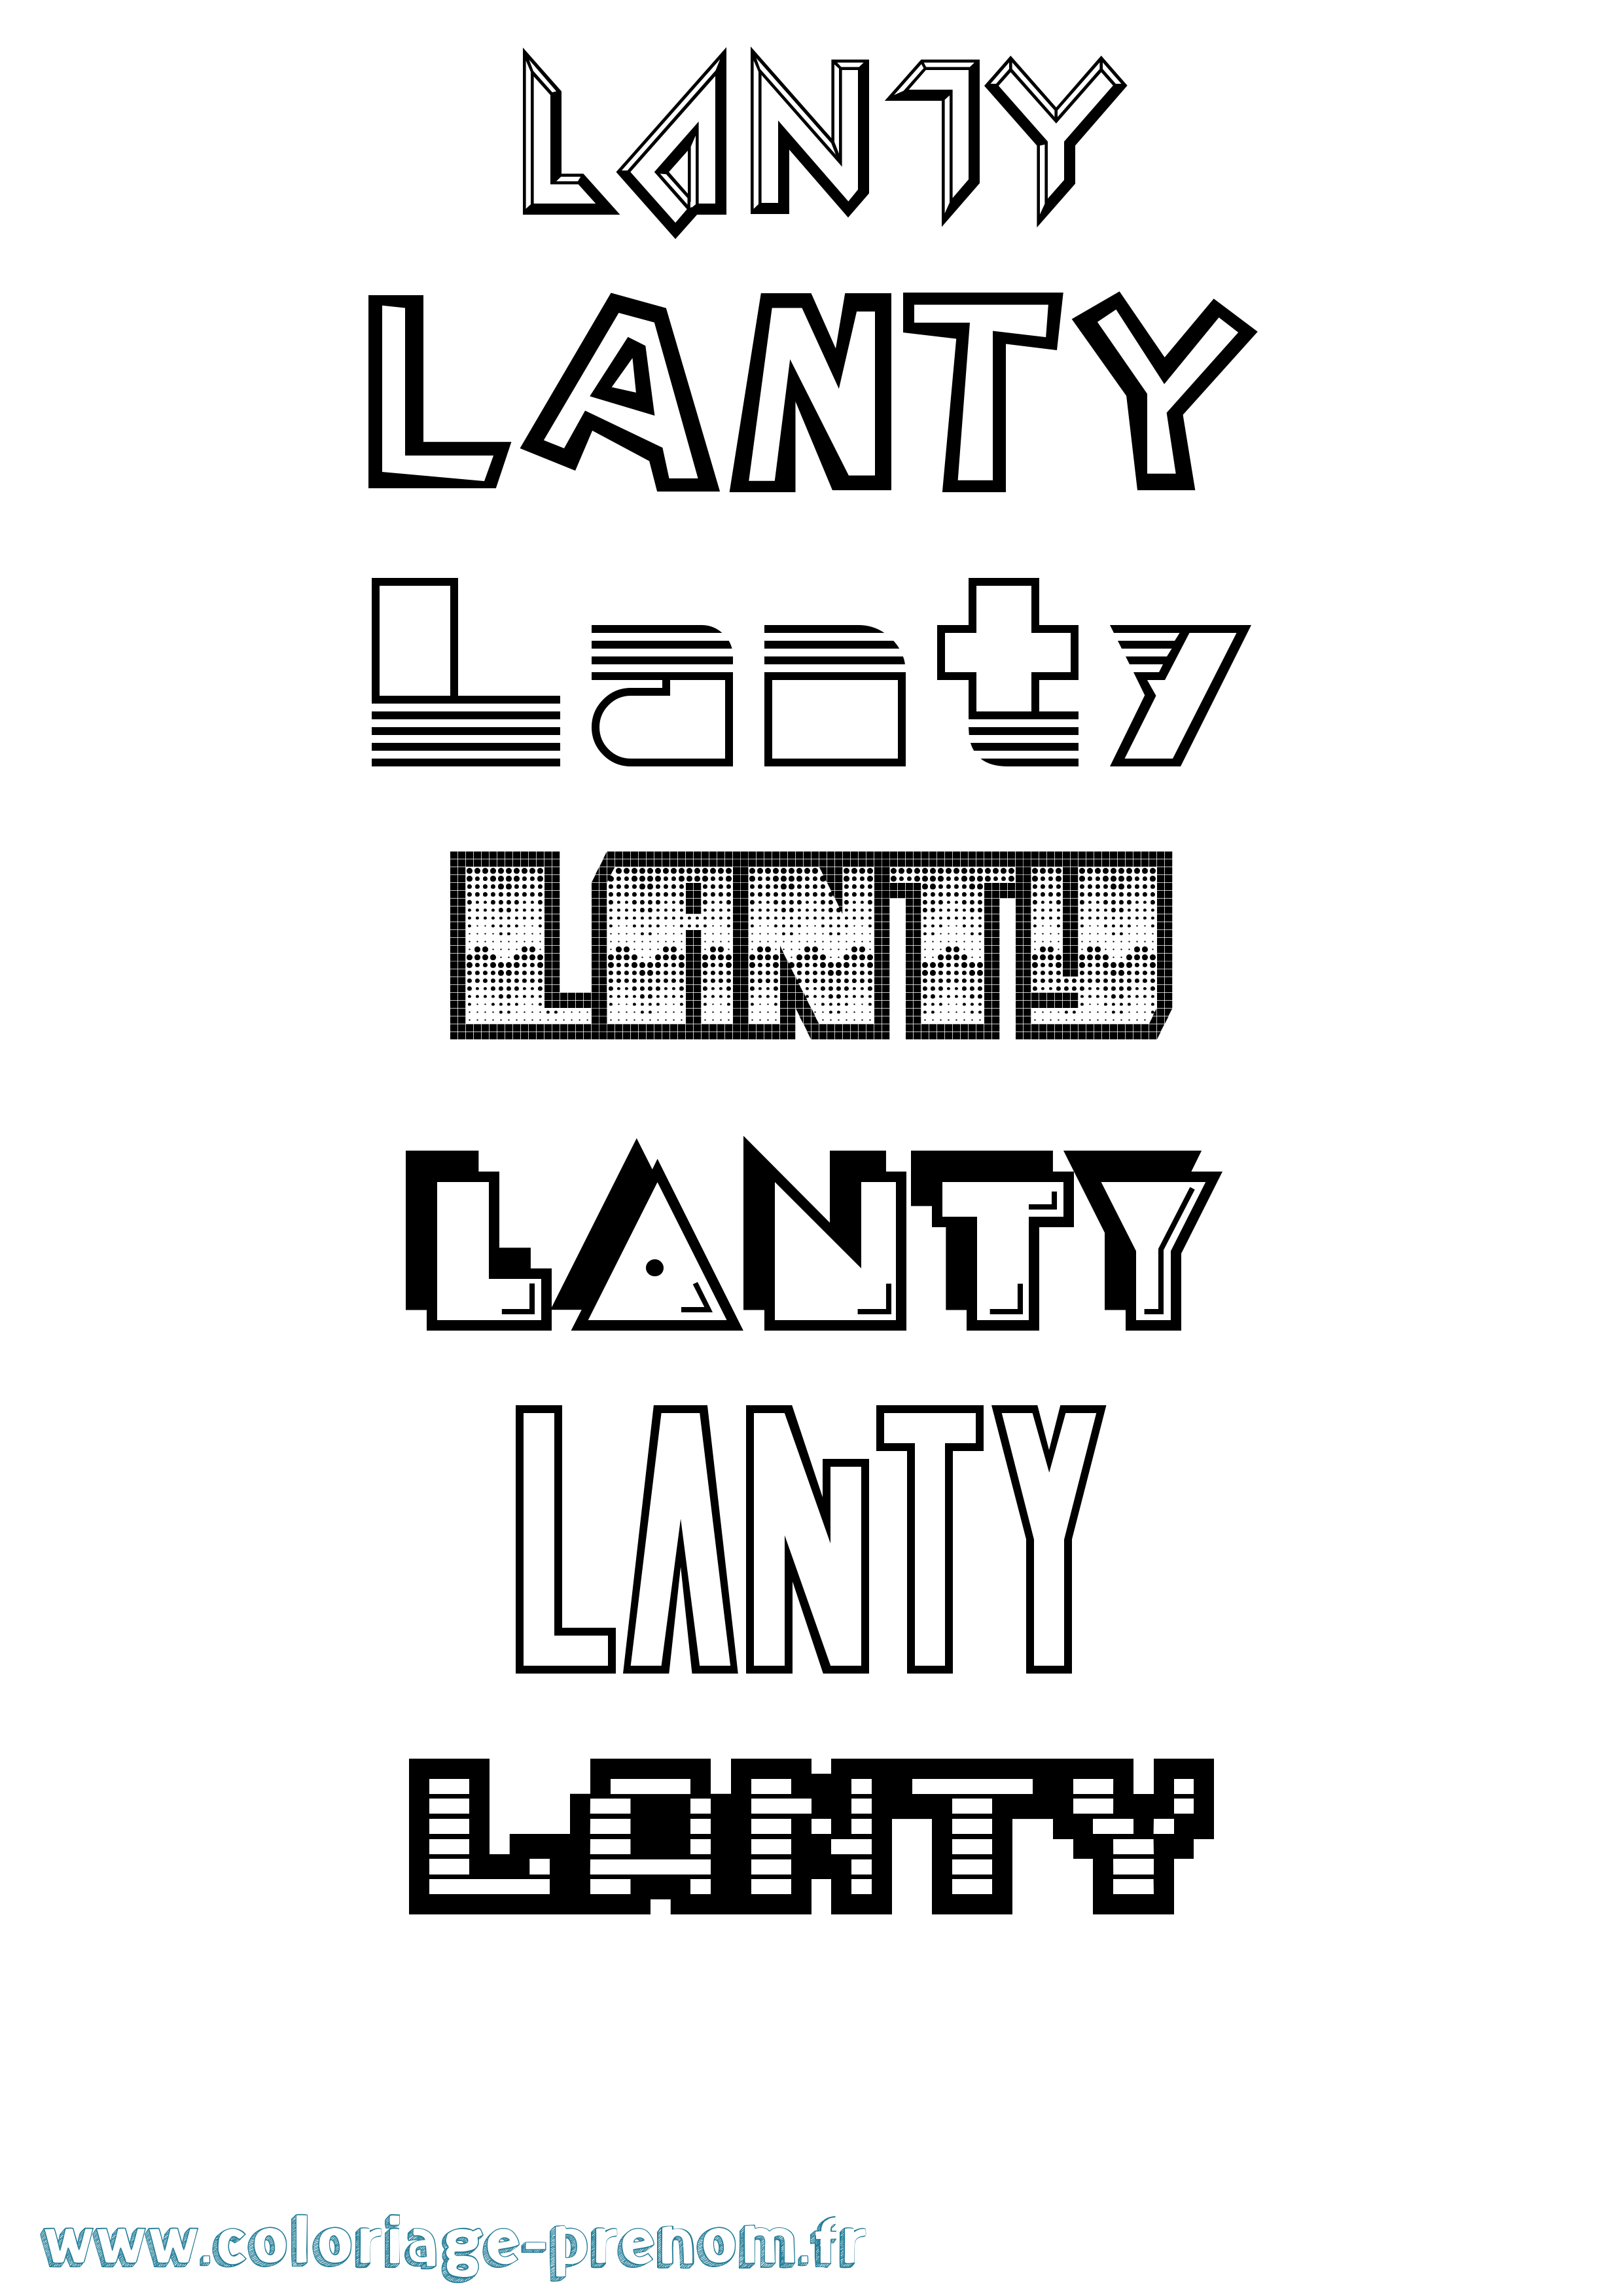 Coloriage prénom Lanty Jeux Vidéos